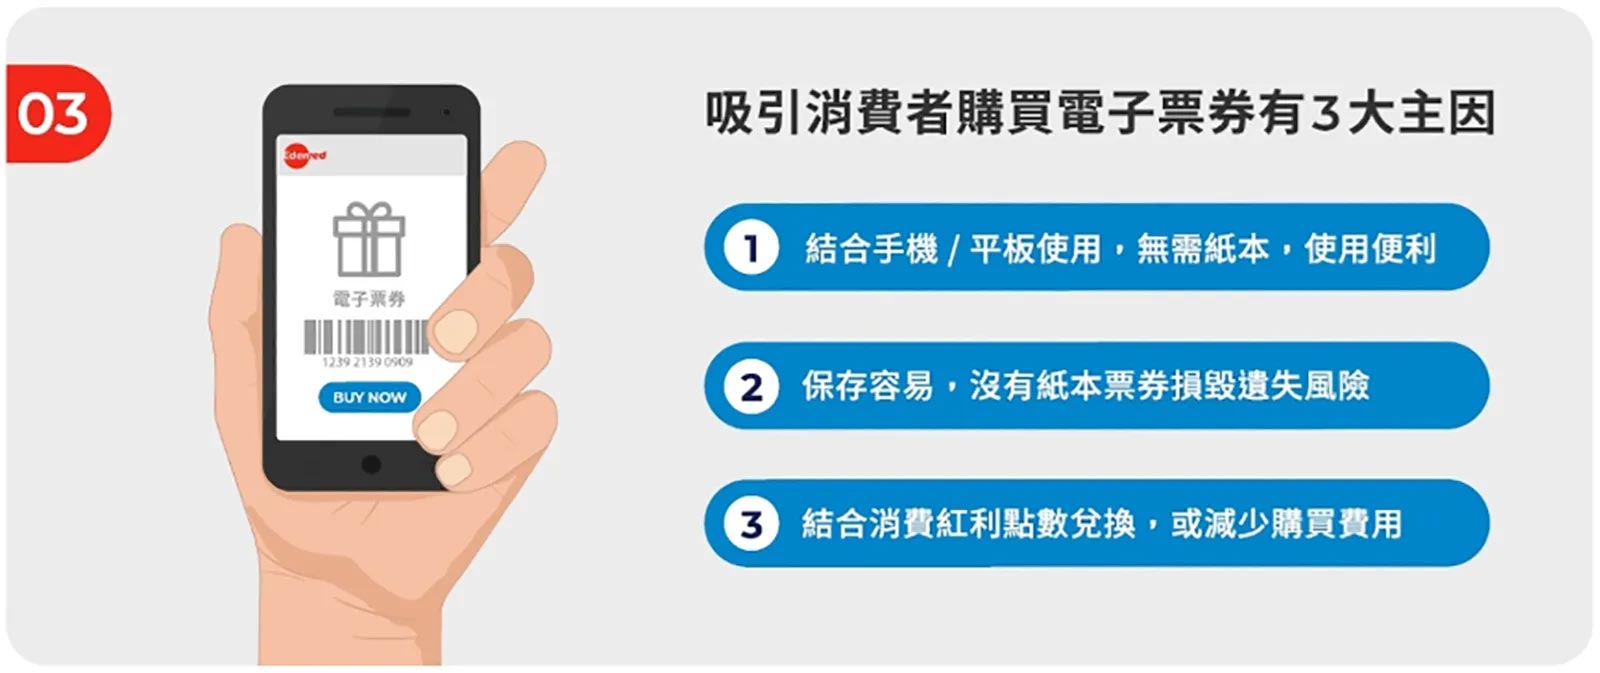 Edenred〈2020台灣電子票券趨勢〉顯示，使用便利、保存容易、能減少購買費用，是吸引消費者購買電子票券的主因。